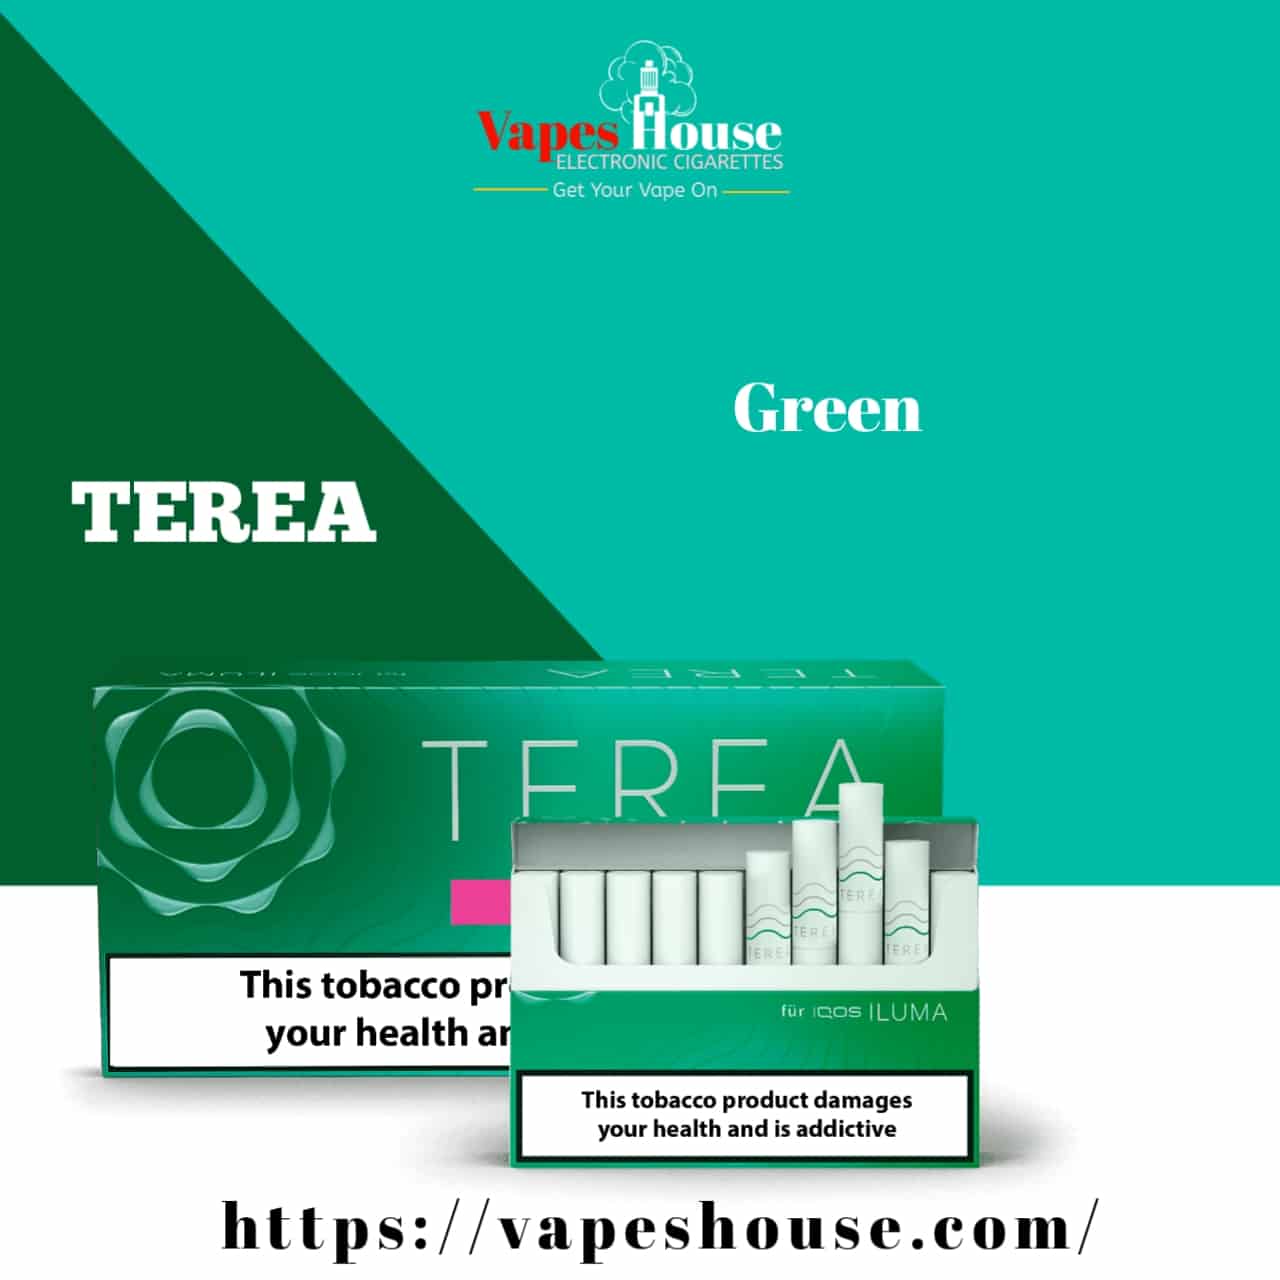 green terea